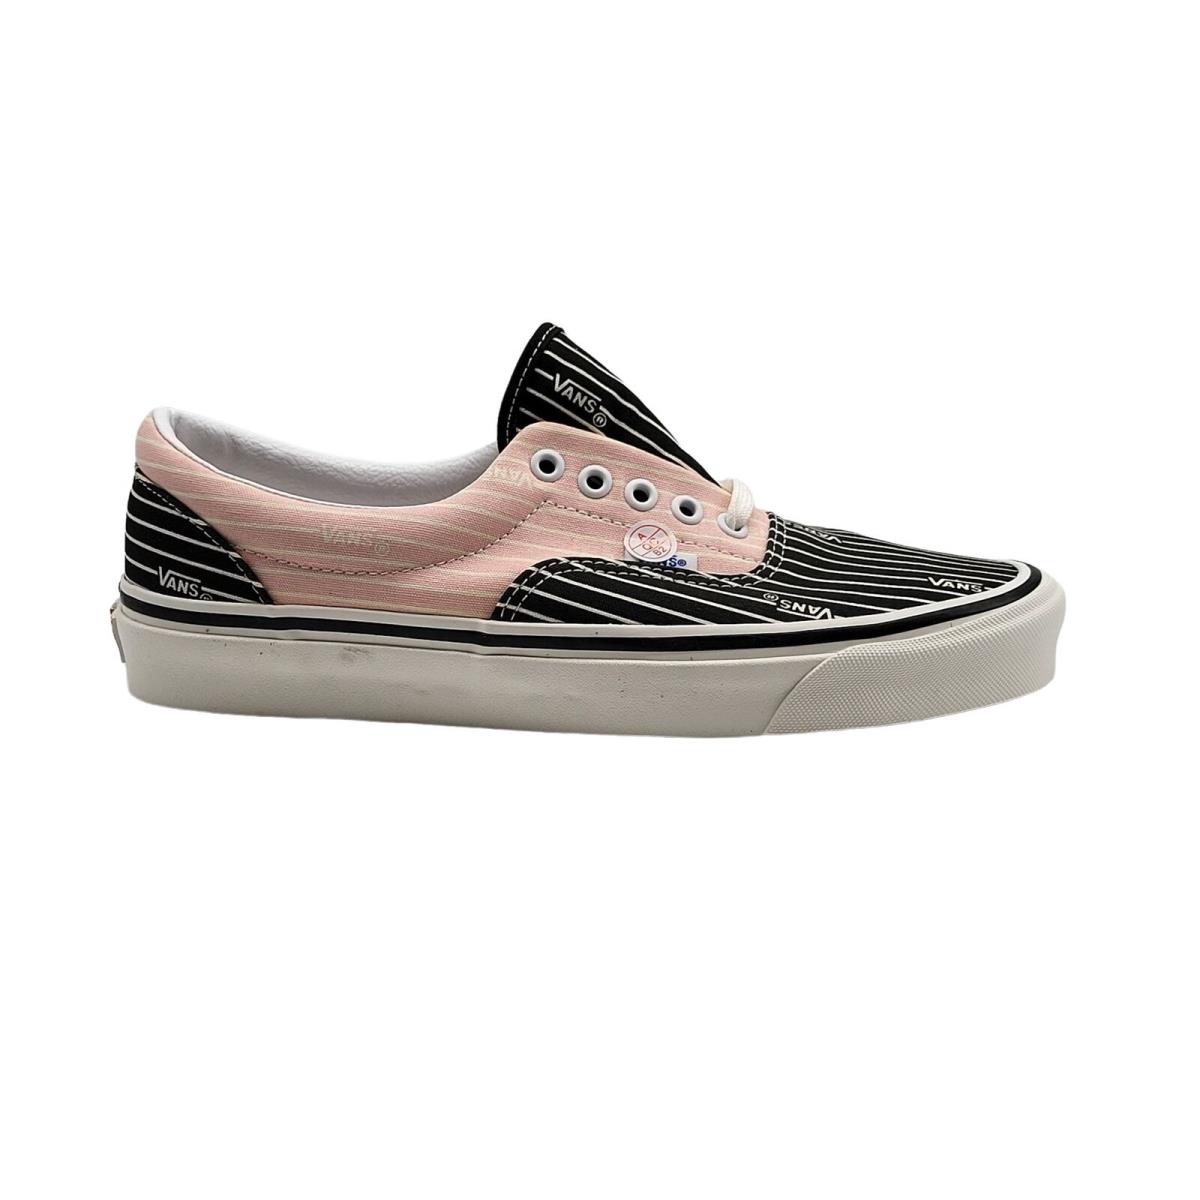 Vans Anaheim Factory Era 95 DX Shoes Stripes Black Pink Mens Size 6